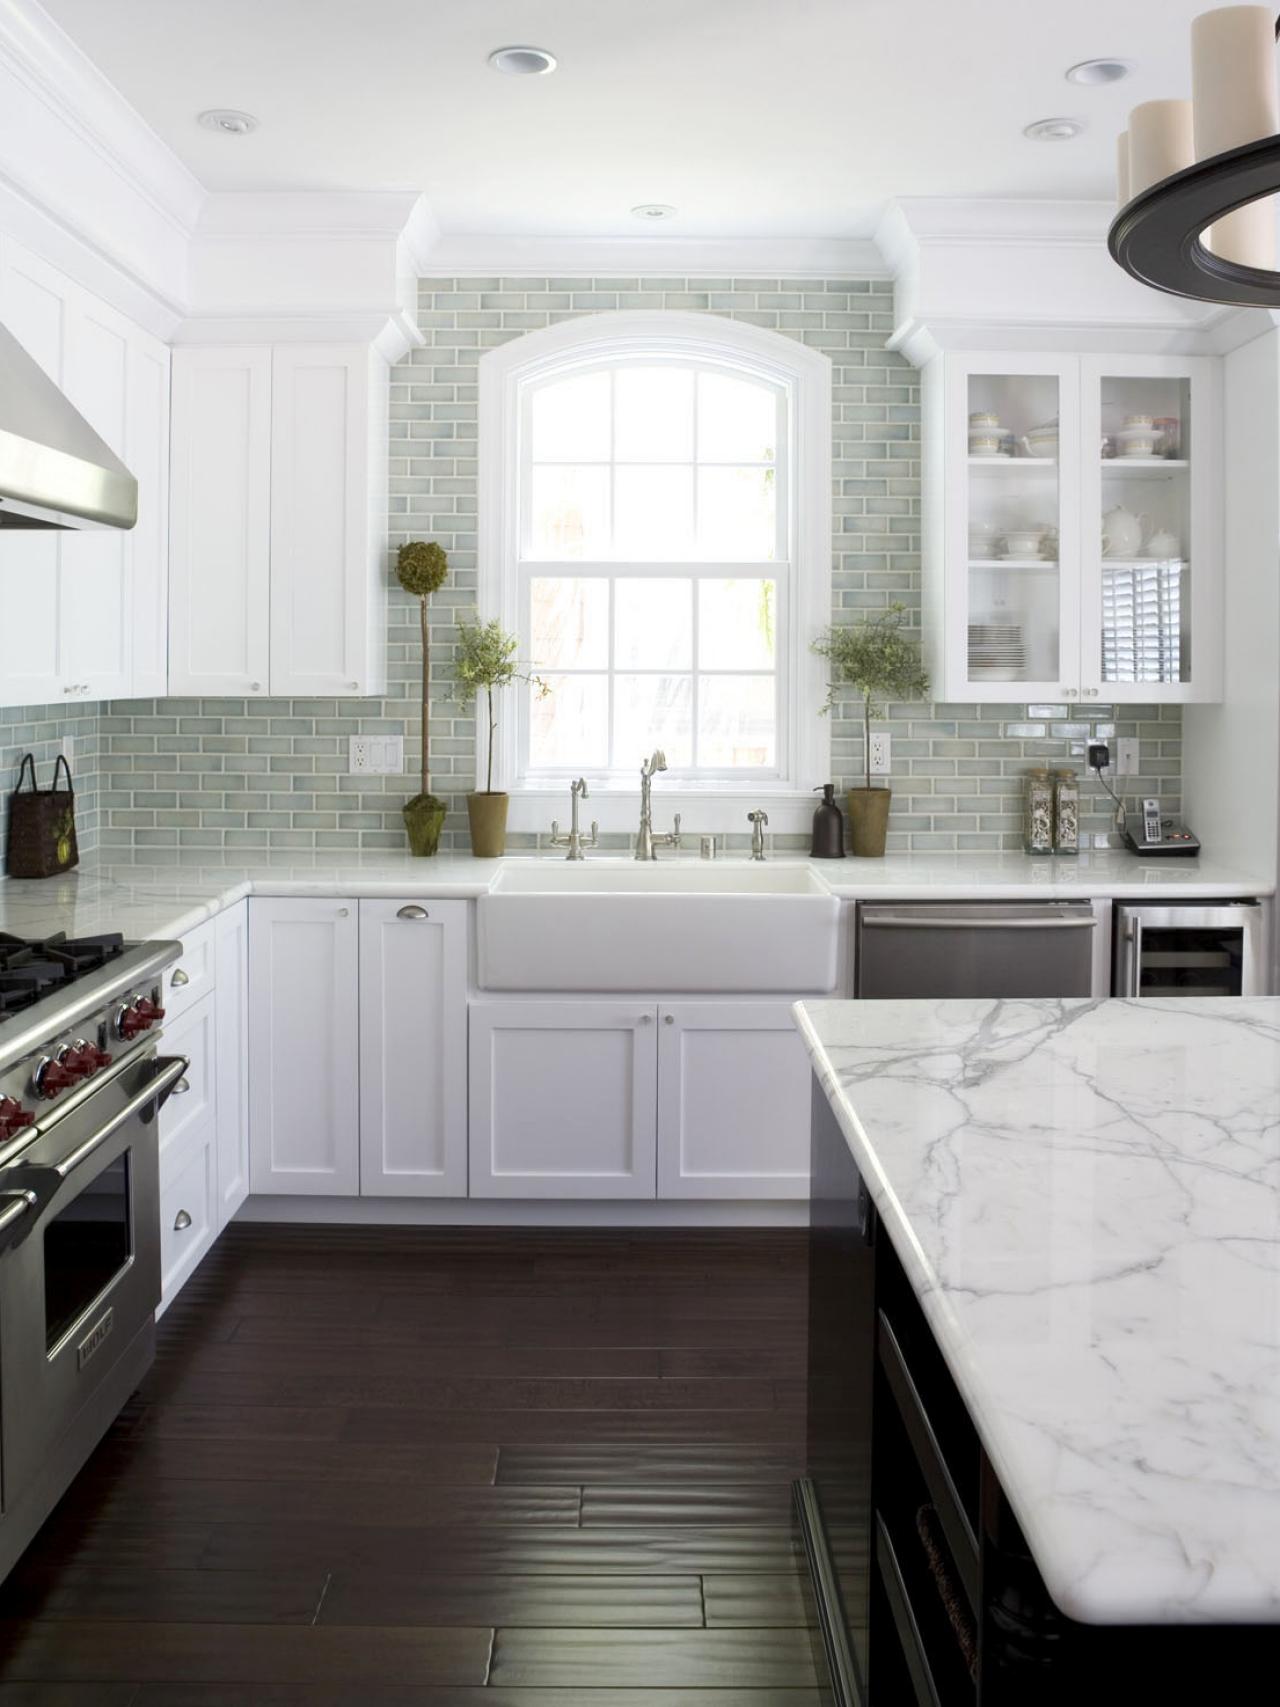 Dp fiorella design white kitchen sink island s3x4.jpg.rend.hgtvcom.1280.1707